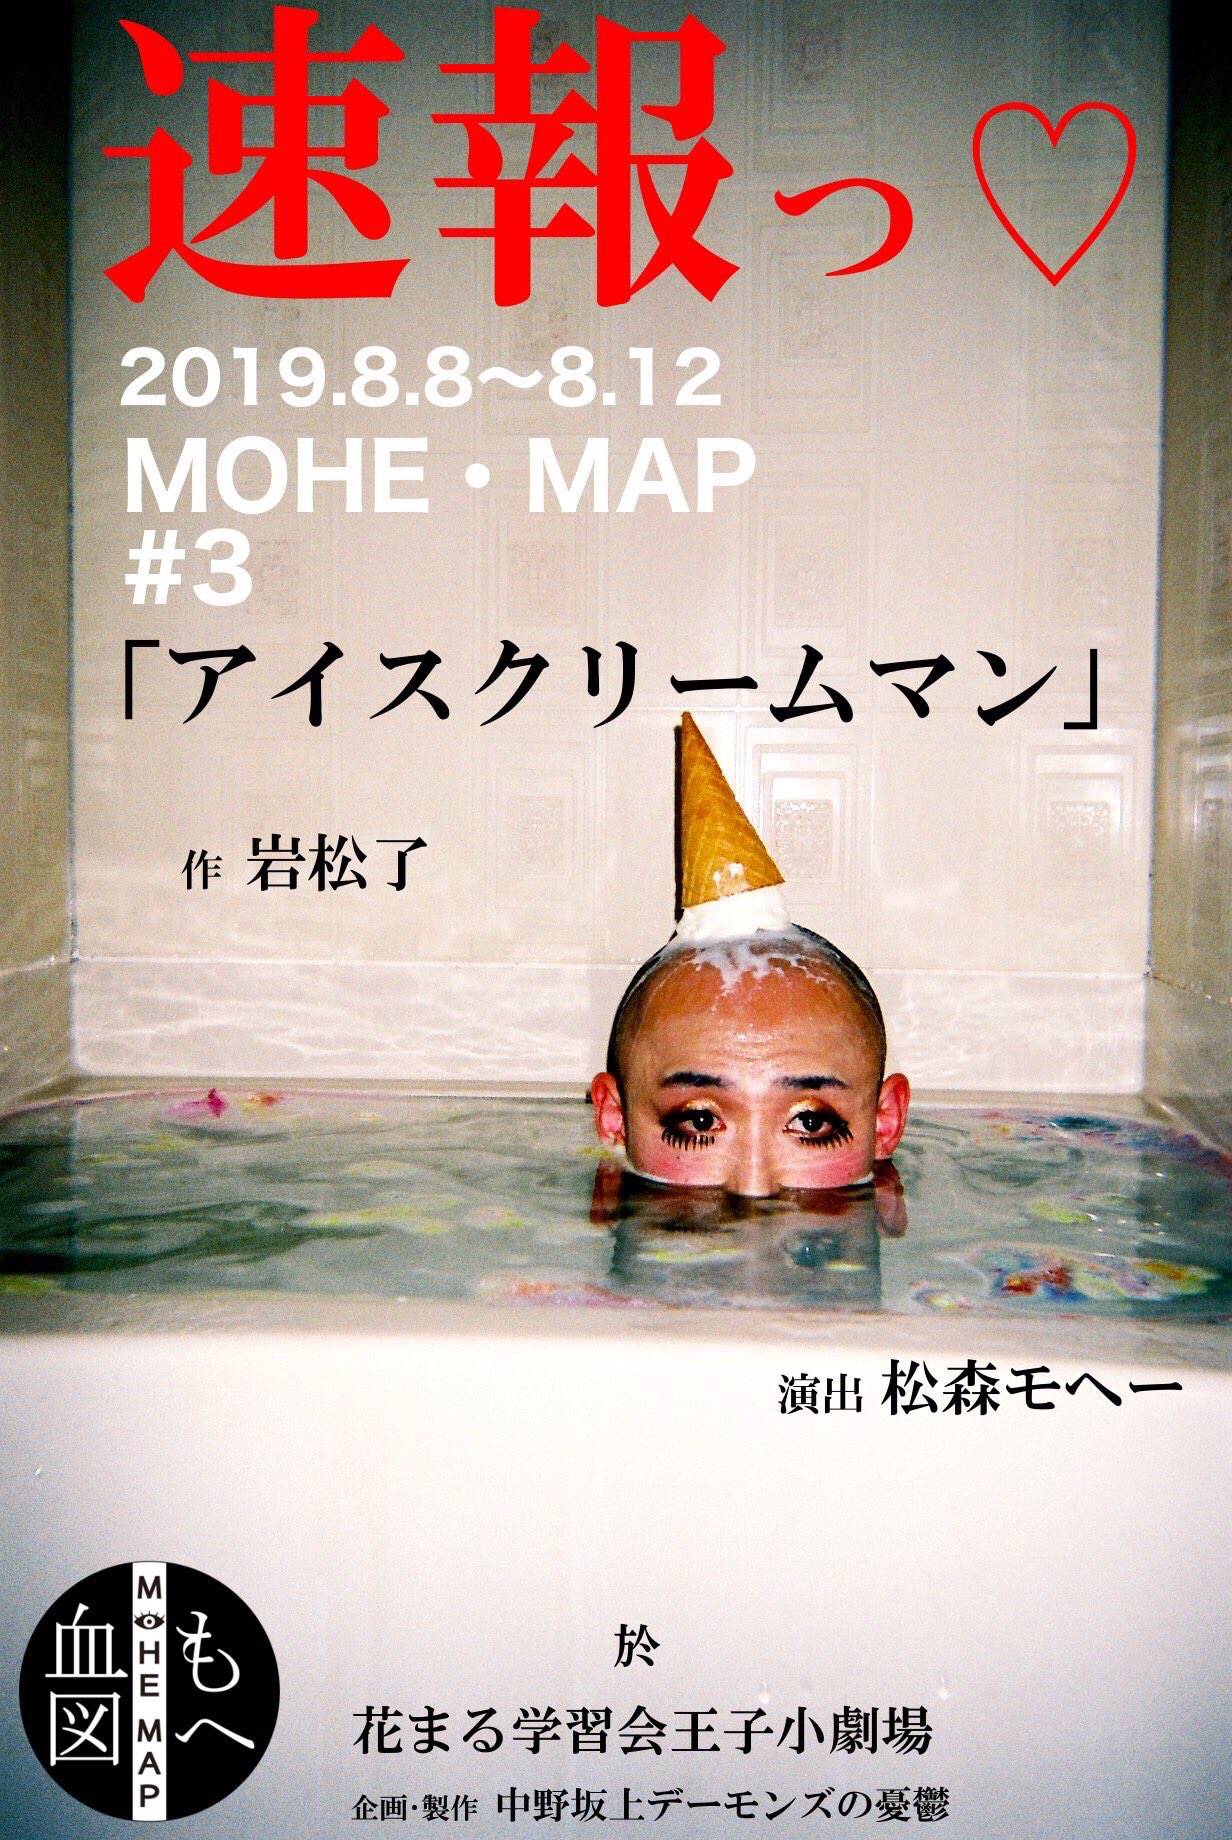 青山祥子 中野坂上デーモンズの憂鬱 特殊公演 HOME・MAP#3『アイス